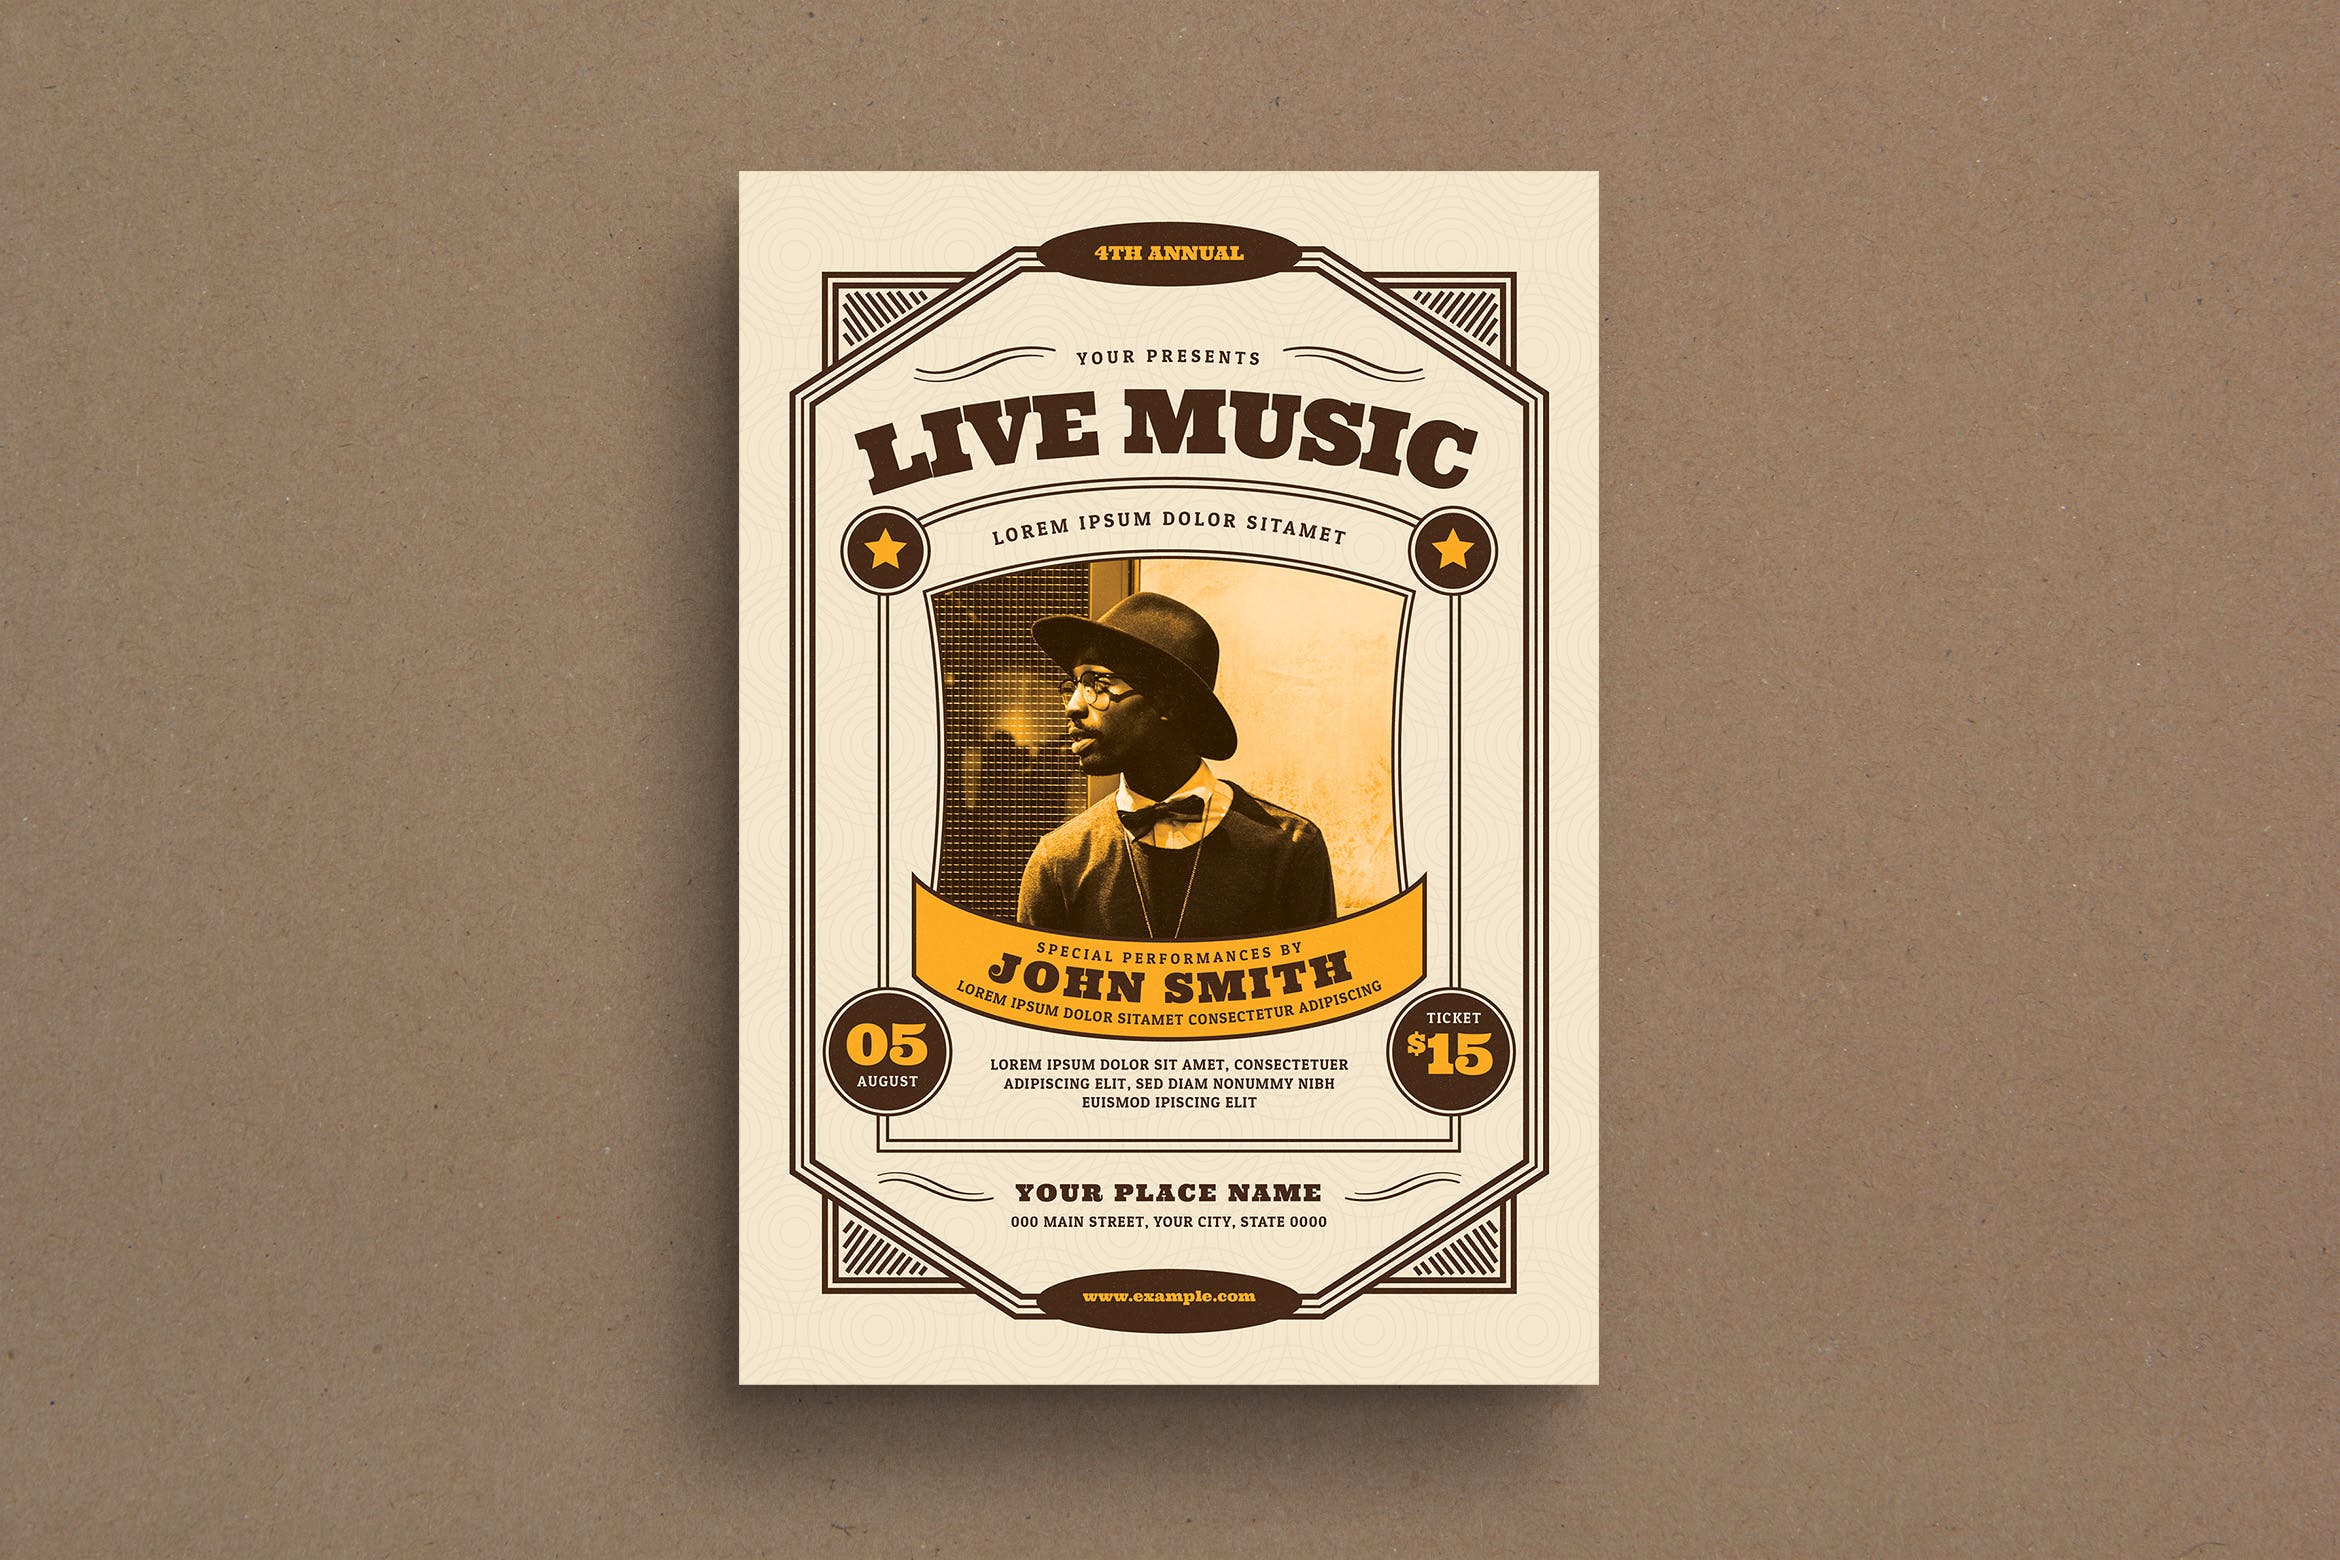 复古风格音乐演出活动海报传单设计模板 Vintage Live Music Event Flyer插图